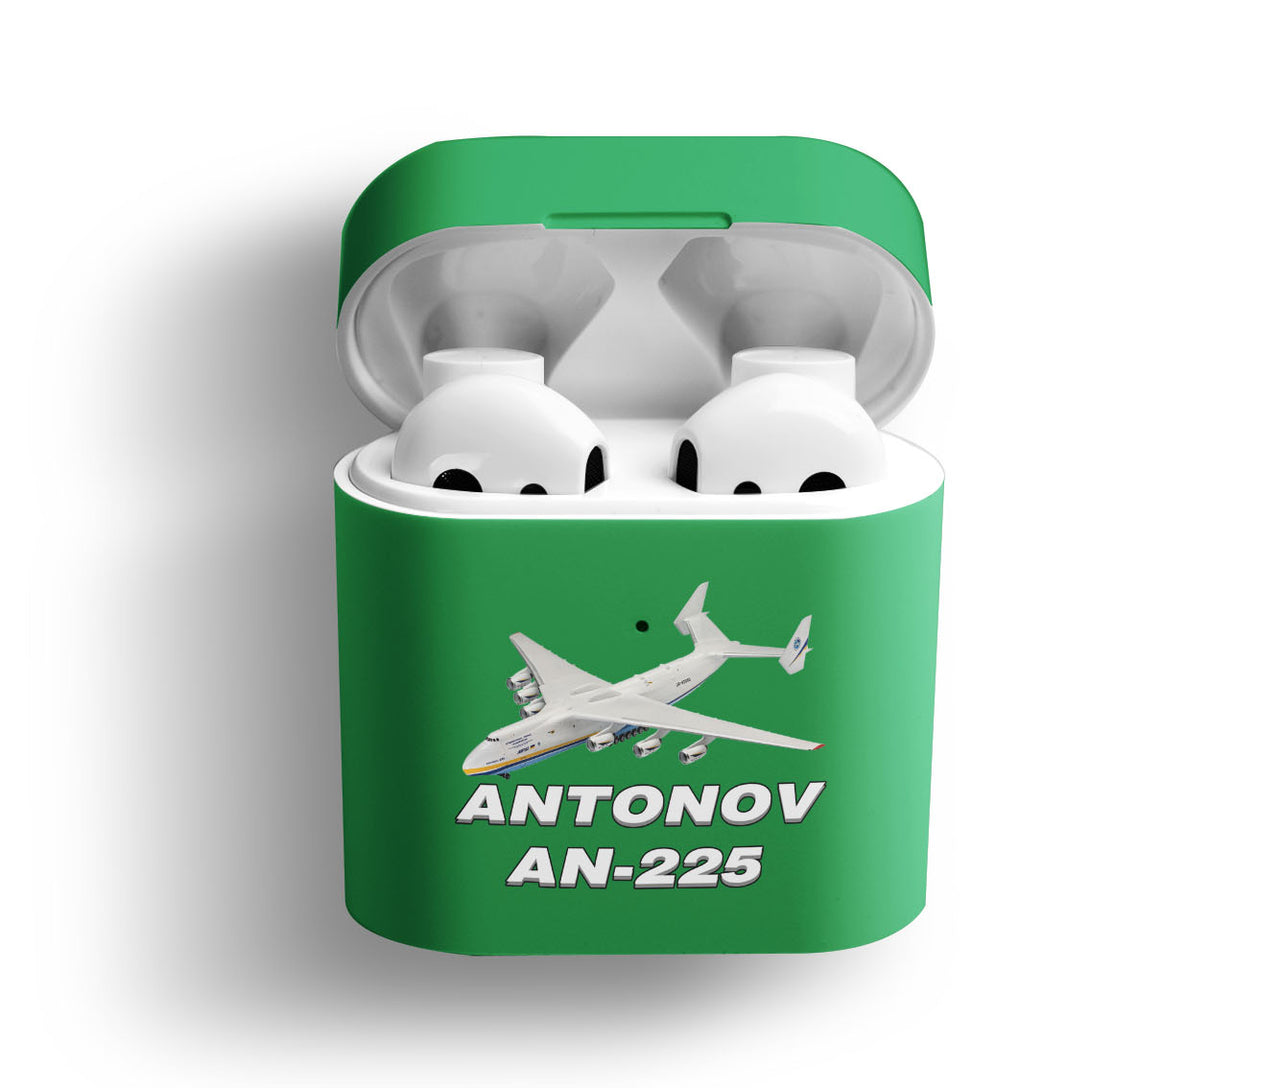 Antonov AN-225 (12) Designed AirPods  Cases